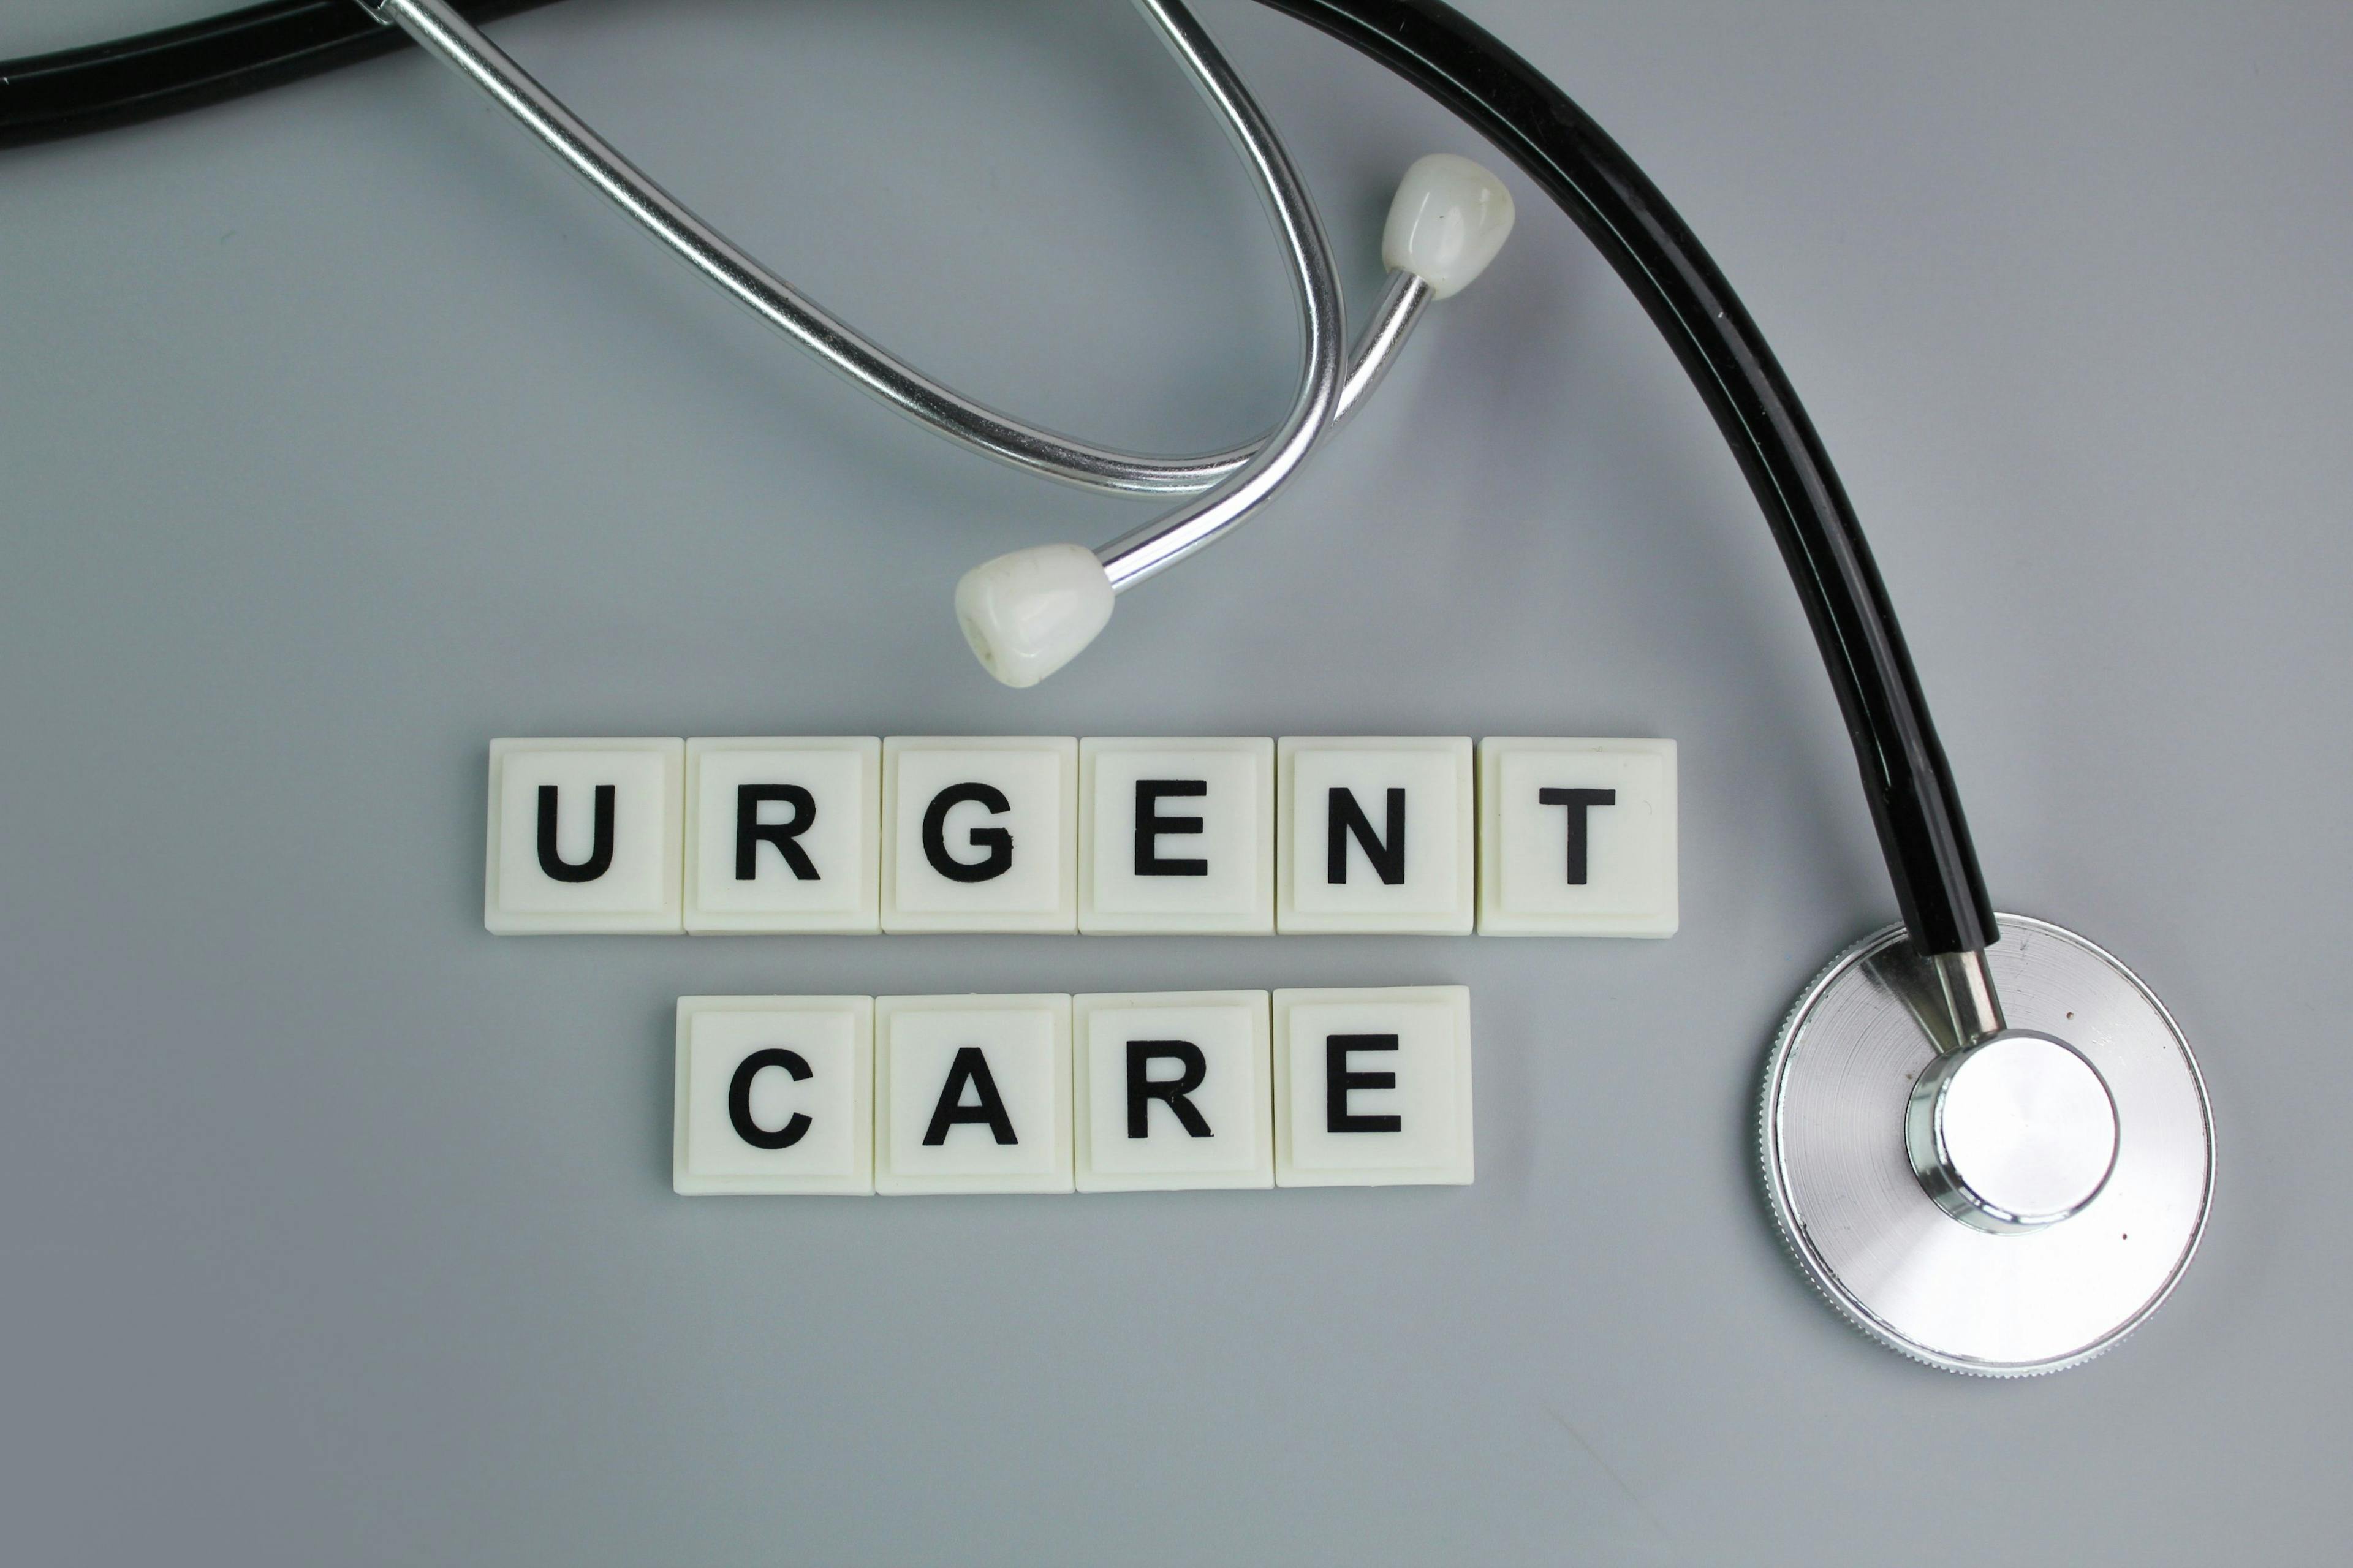 Urgent care model: ©Fauzi - stock.adobe.com